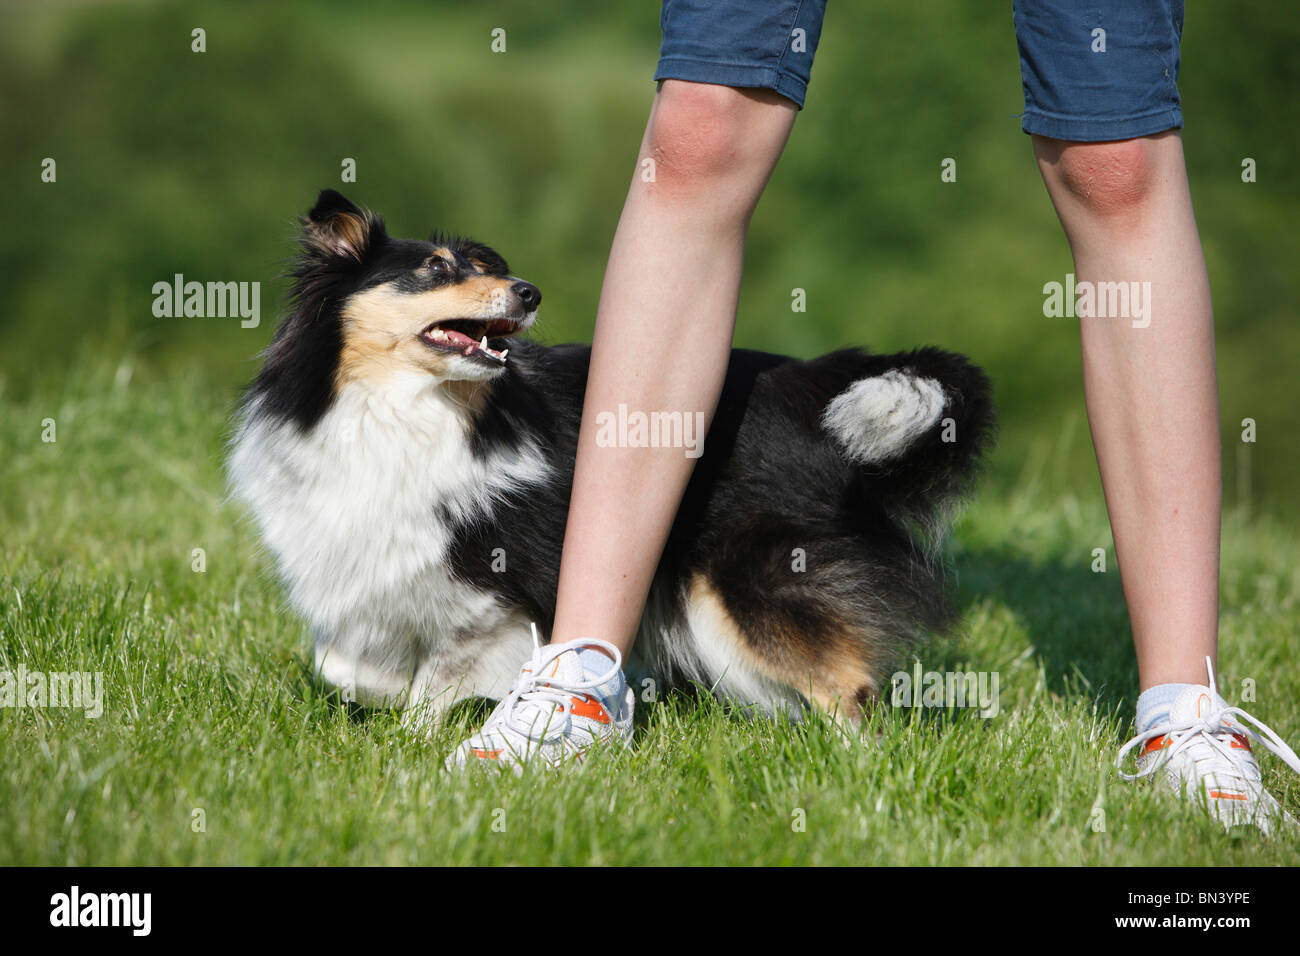 Shetland Sheepdog (Canis Lupus F. Familiaris), dog dancing, Hund läuft durch  die Beine von einem Spaziergang Mädchen, Deutschland Stockfotografie - Alamy